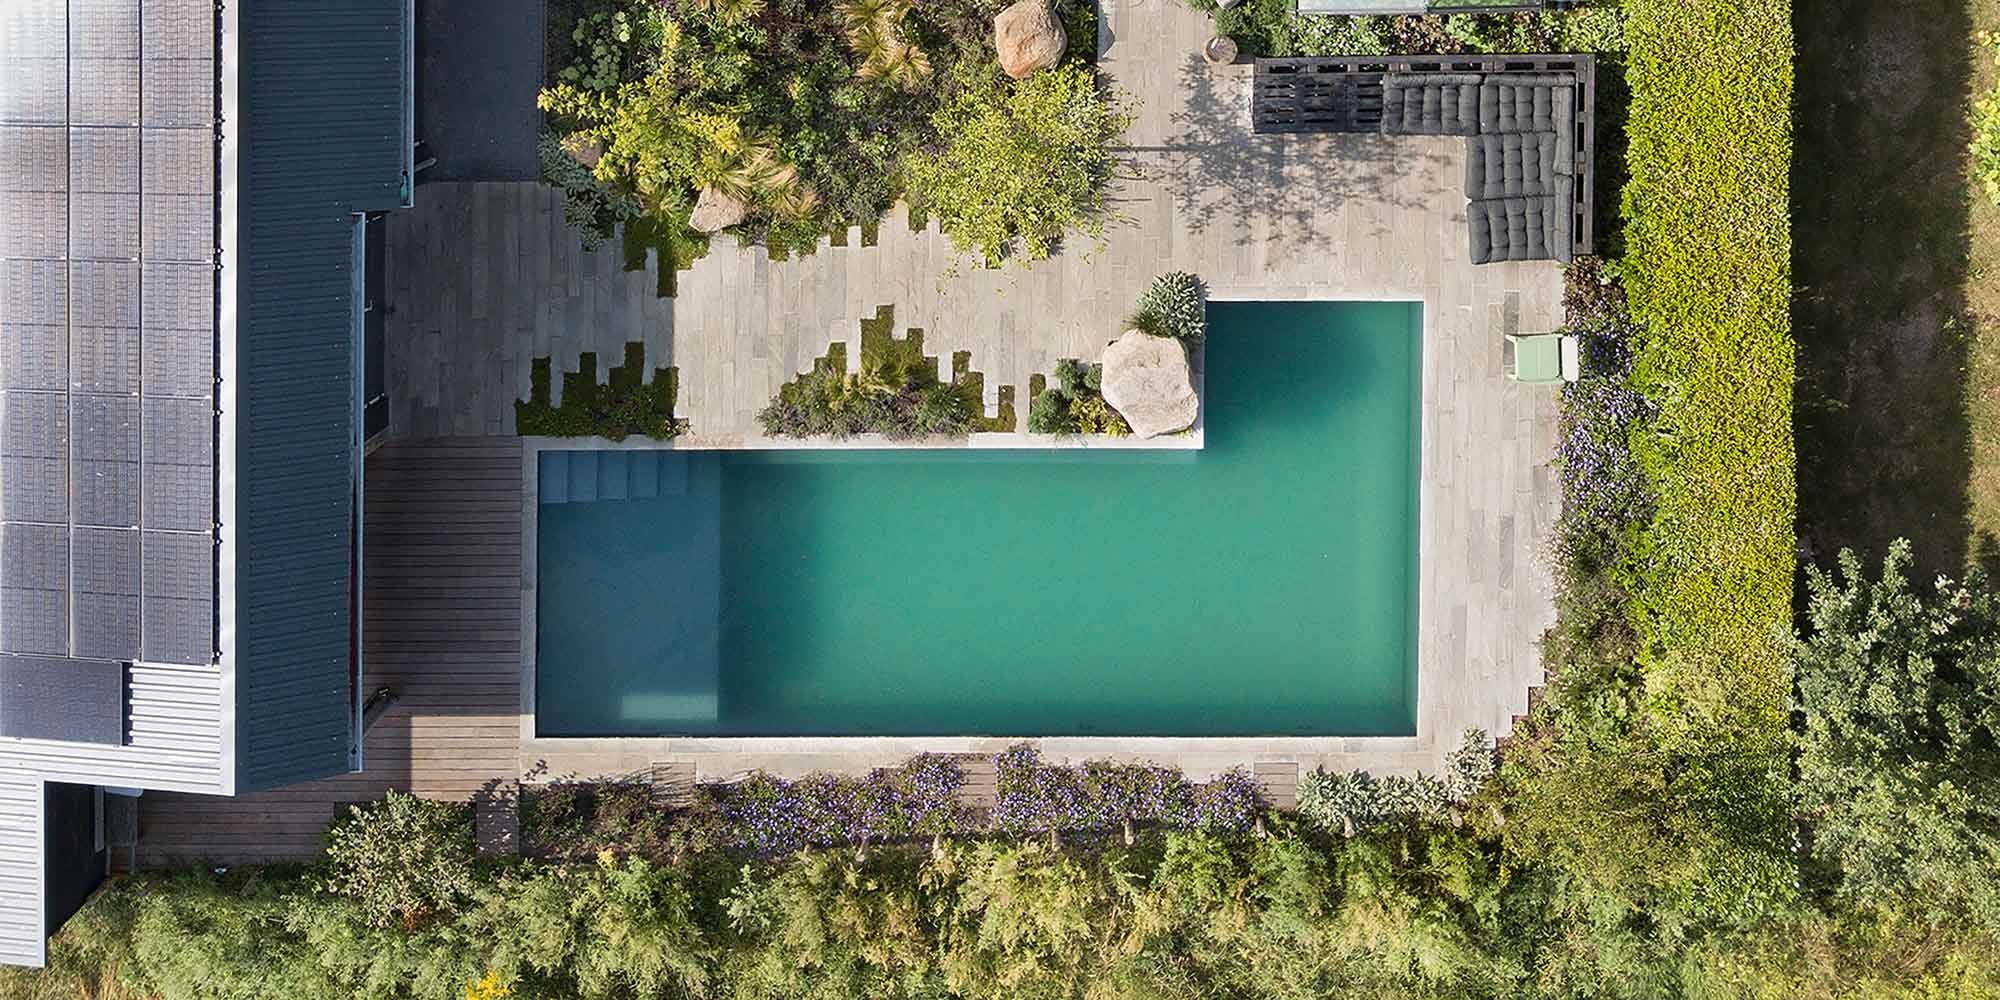 Een zwembad in Nederland in de tuin van bovenaf gefotografeerd